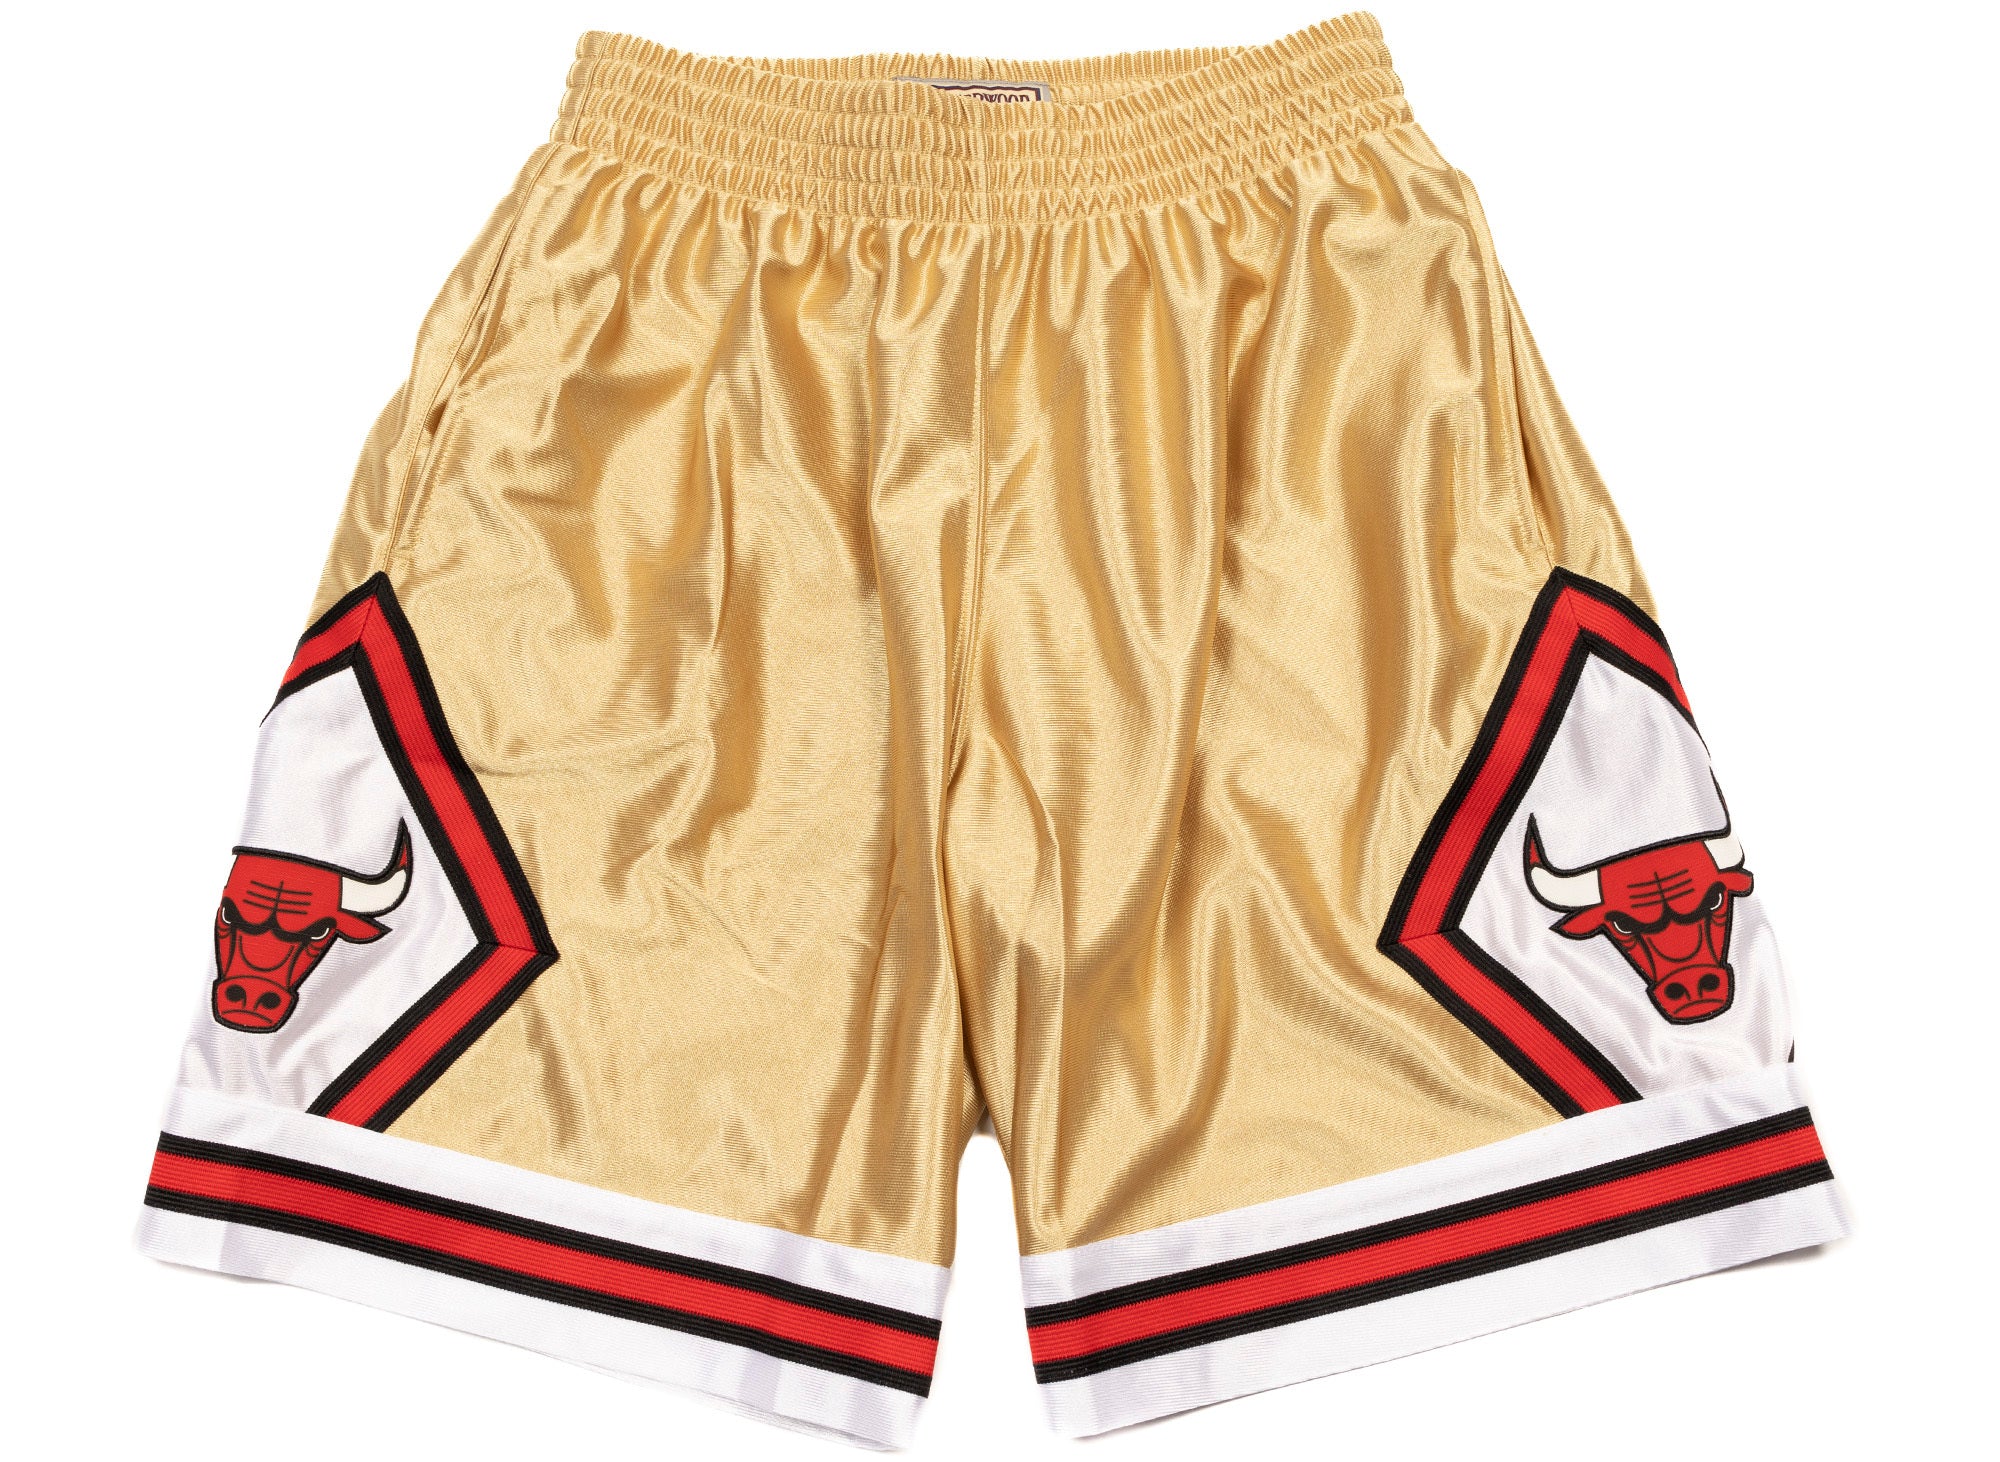 Mitchell & Ness Chicago Bulls Swingman Shorts M